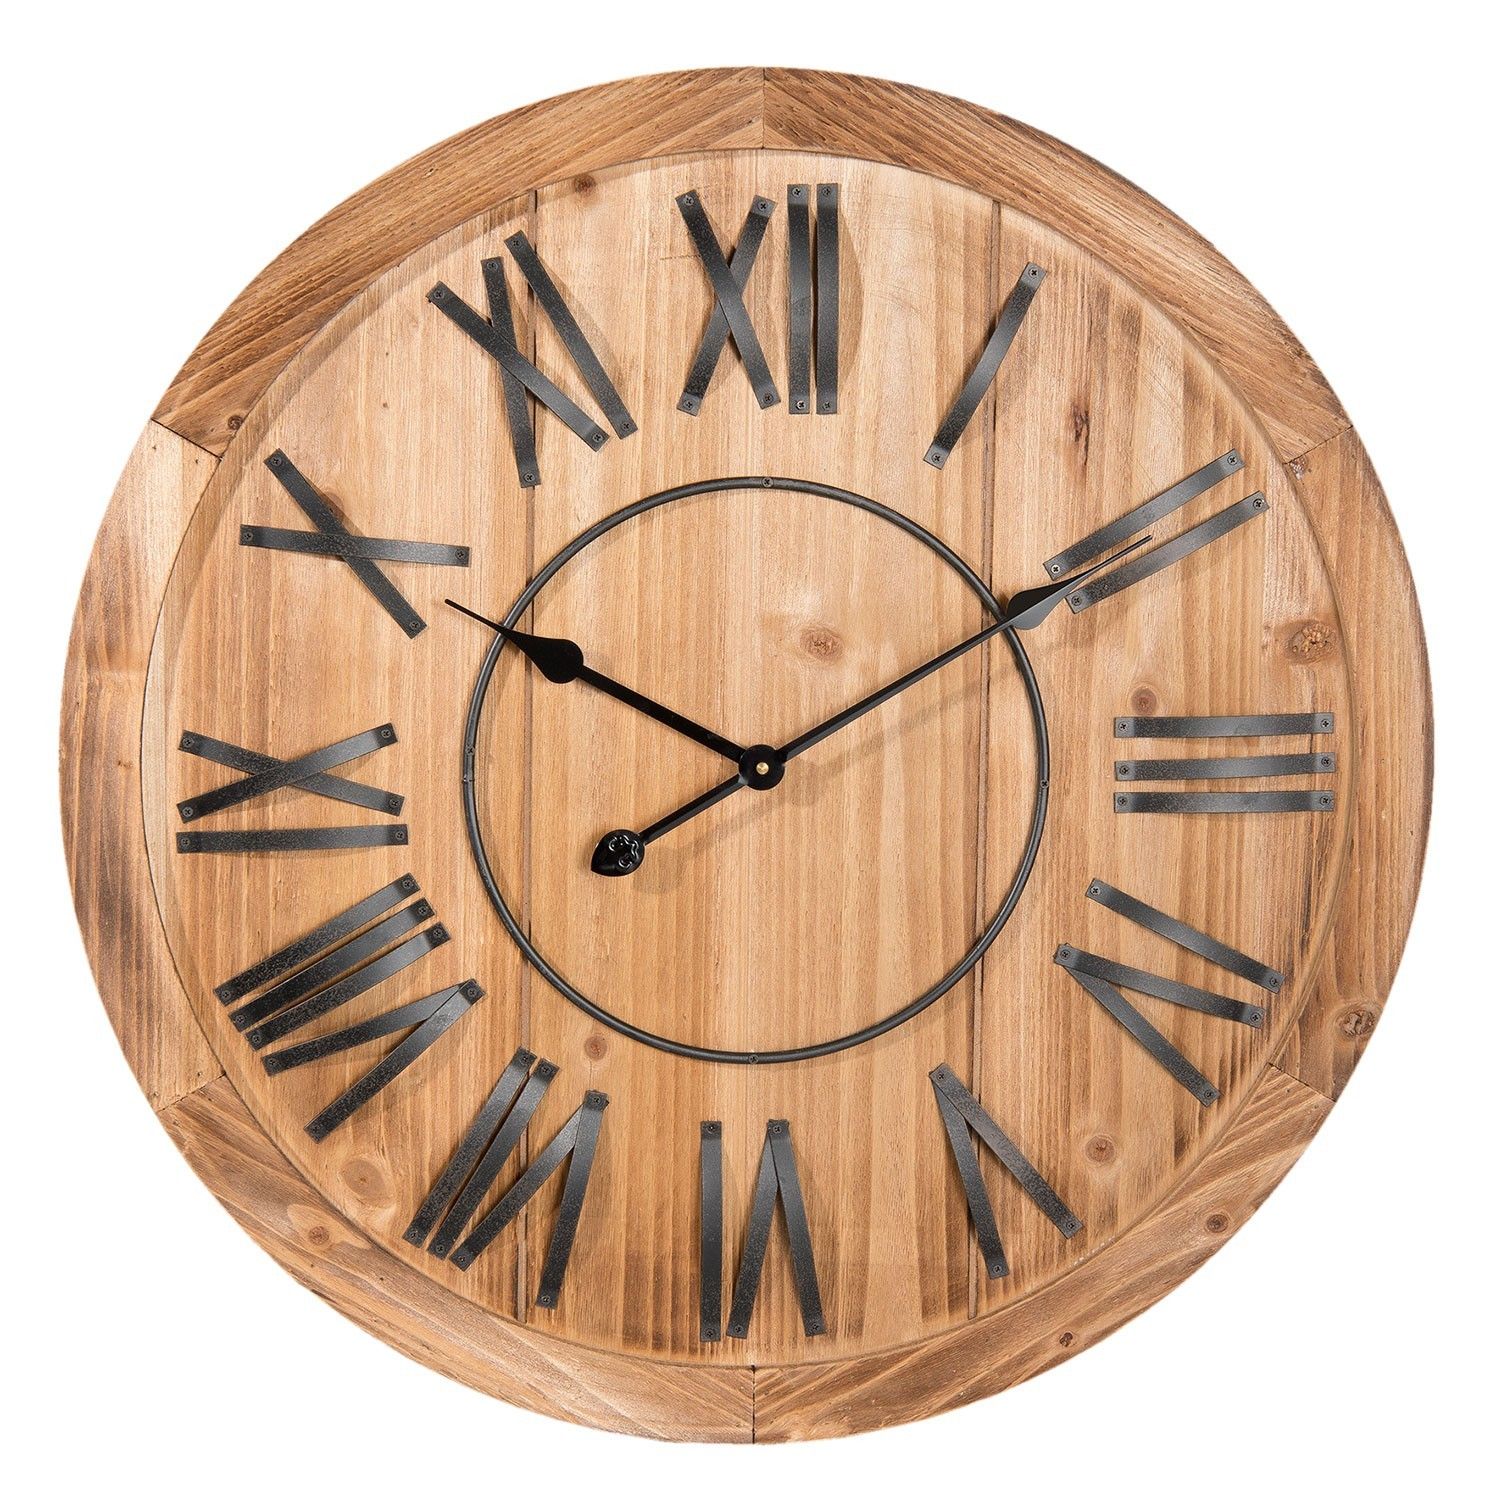 Drevené hodiny s kovovými číslicami - Ø 70*5 cm